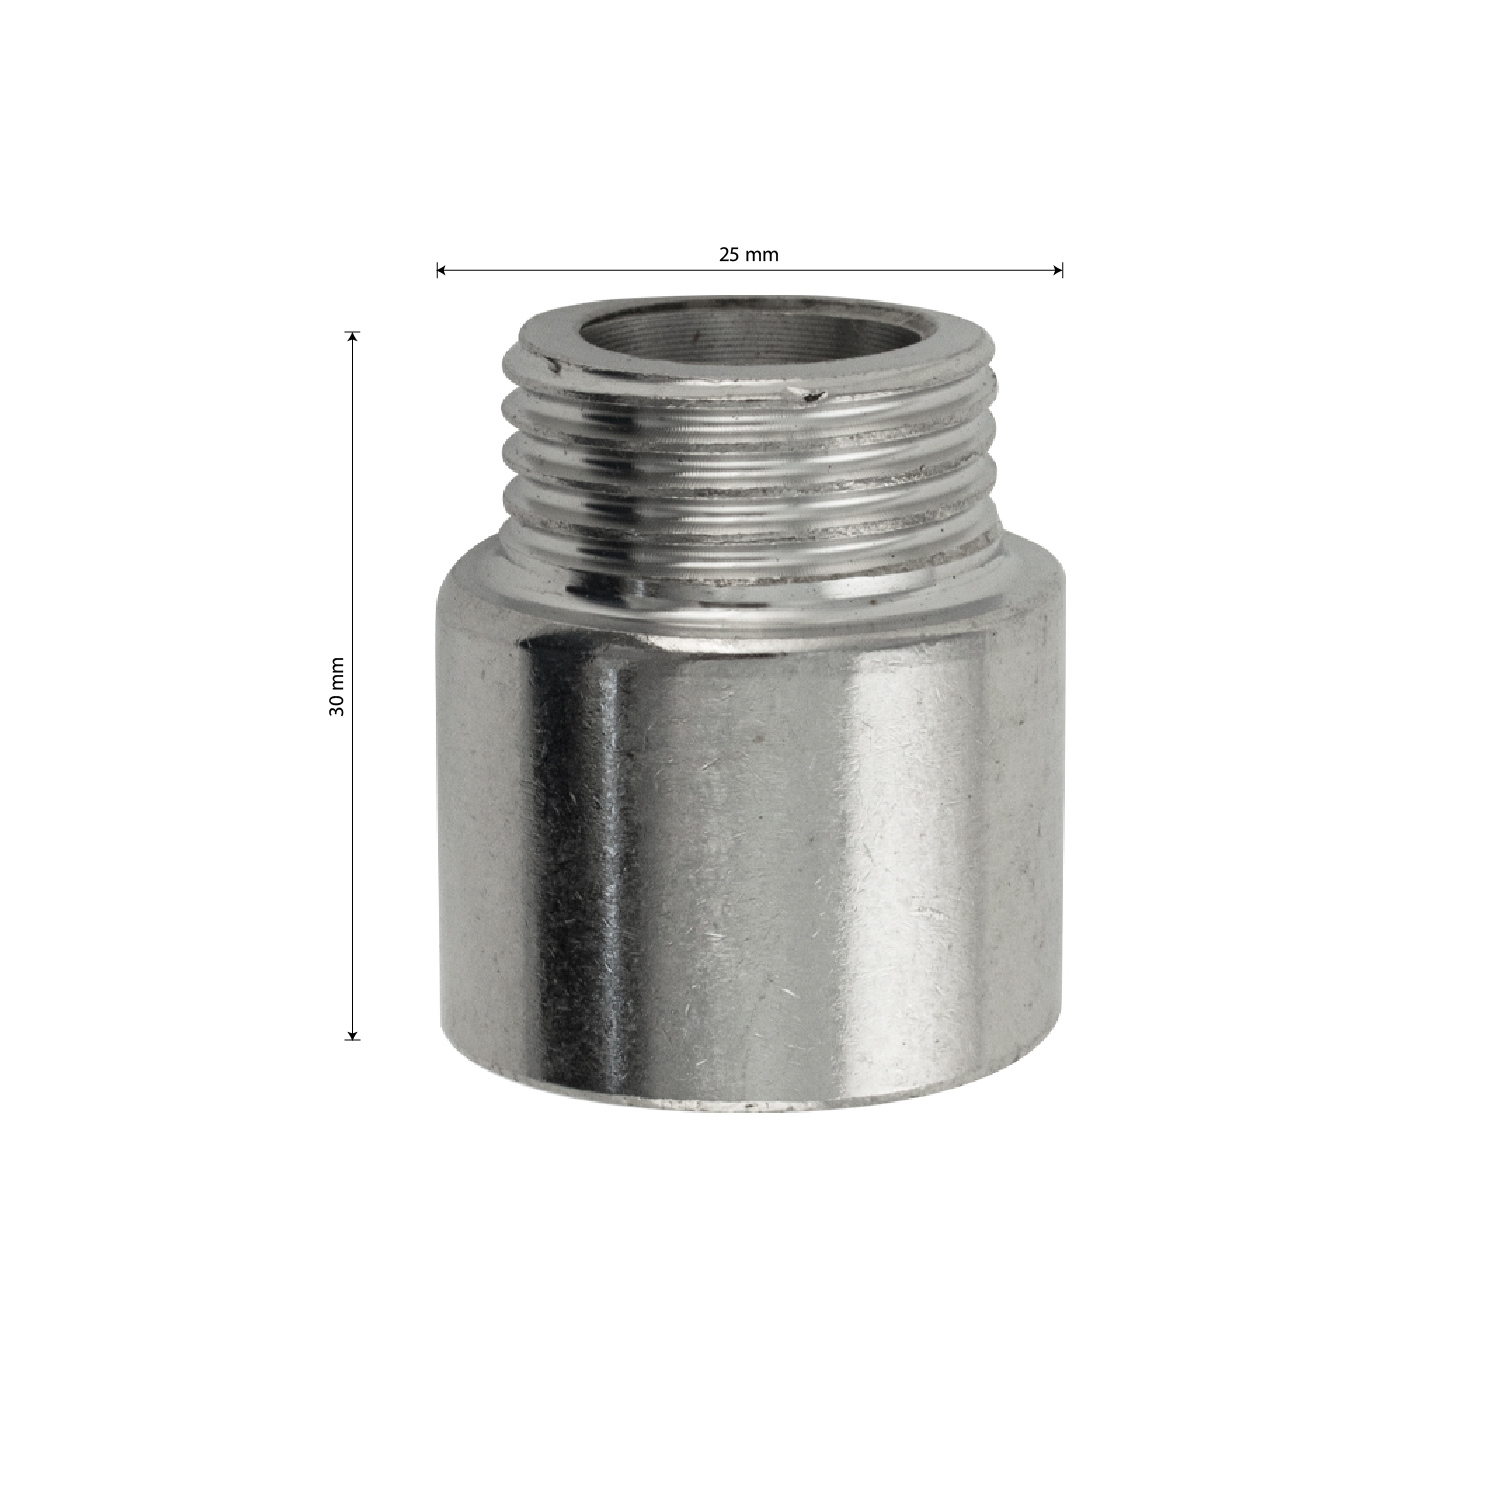 МАК - Удлинитель 20 мм, 1/2м х 1/2п, из нержавеющей стали марки 304